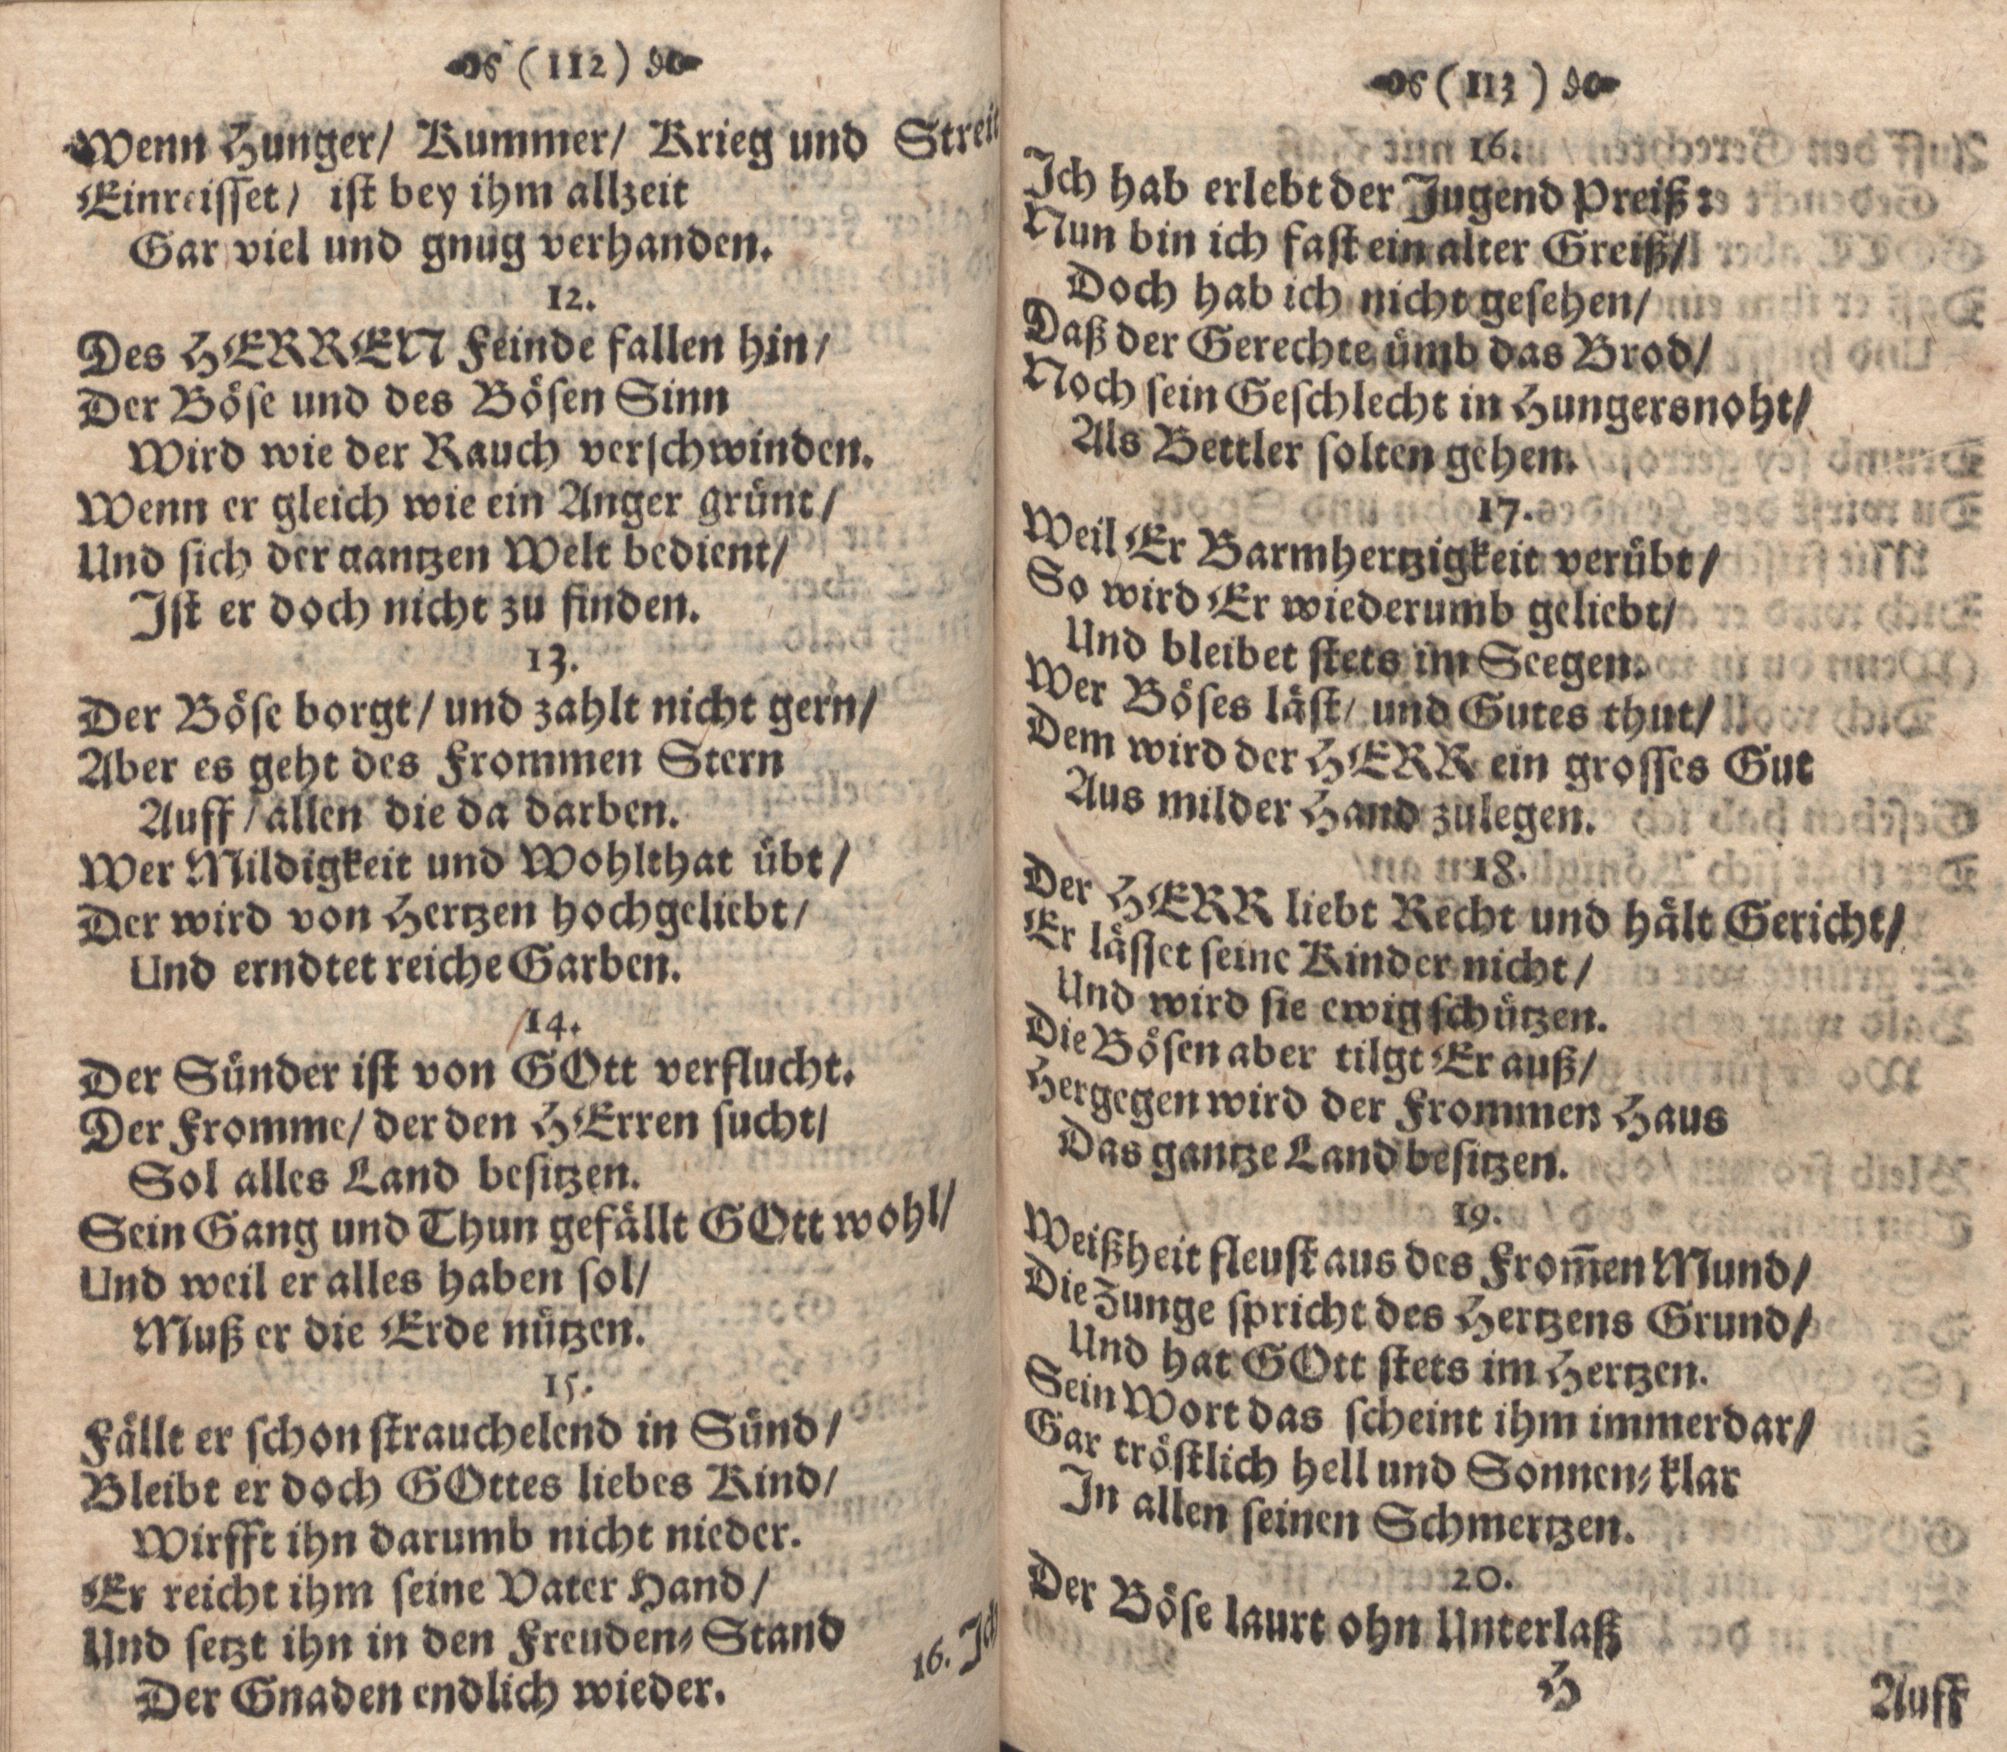 Der Verfolgete, Errettete und Lobsingende David (1686) | 57. (112-113) Haupttext